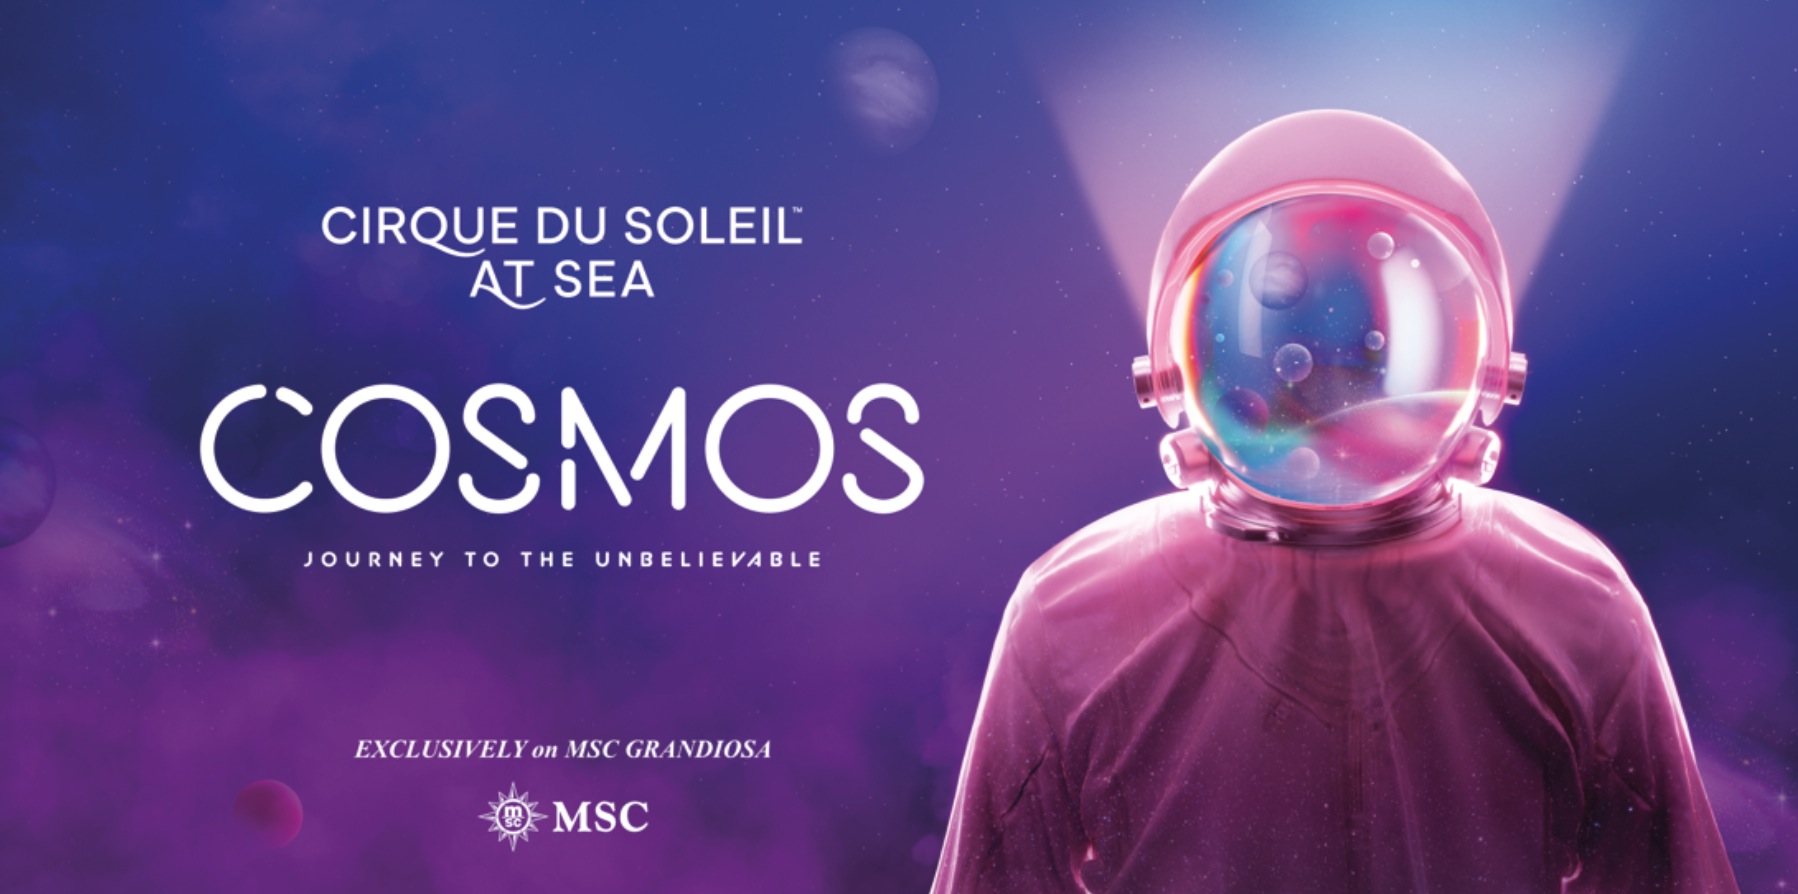 MSC Cruises hat zwei brandneue Cirque du Soleil at Sea Shows, die ausschließlich für die MSC Grandiosa konzipiert wurden.